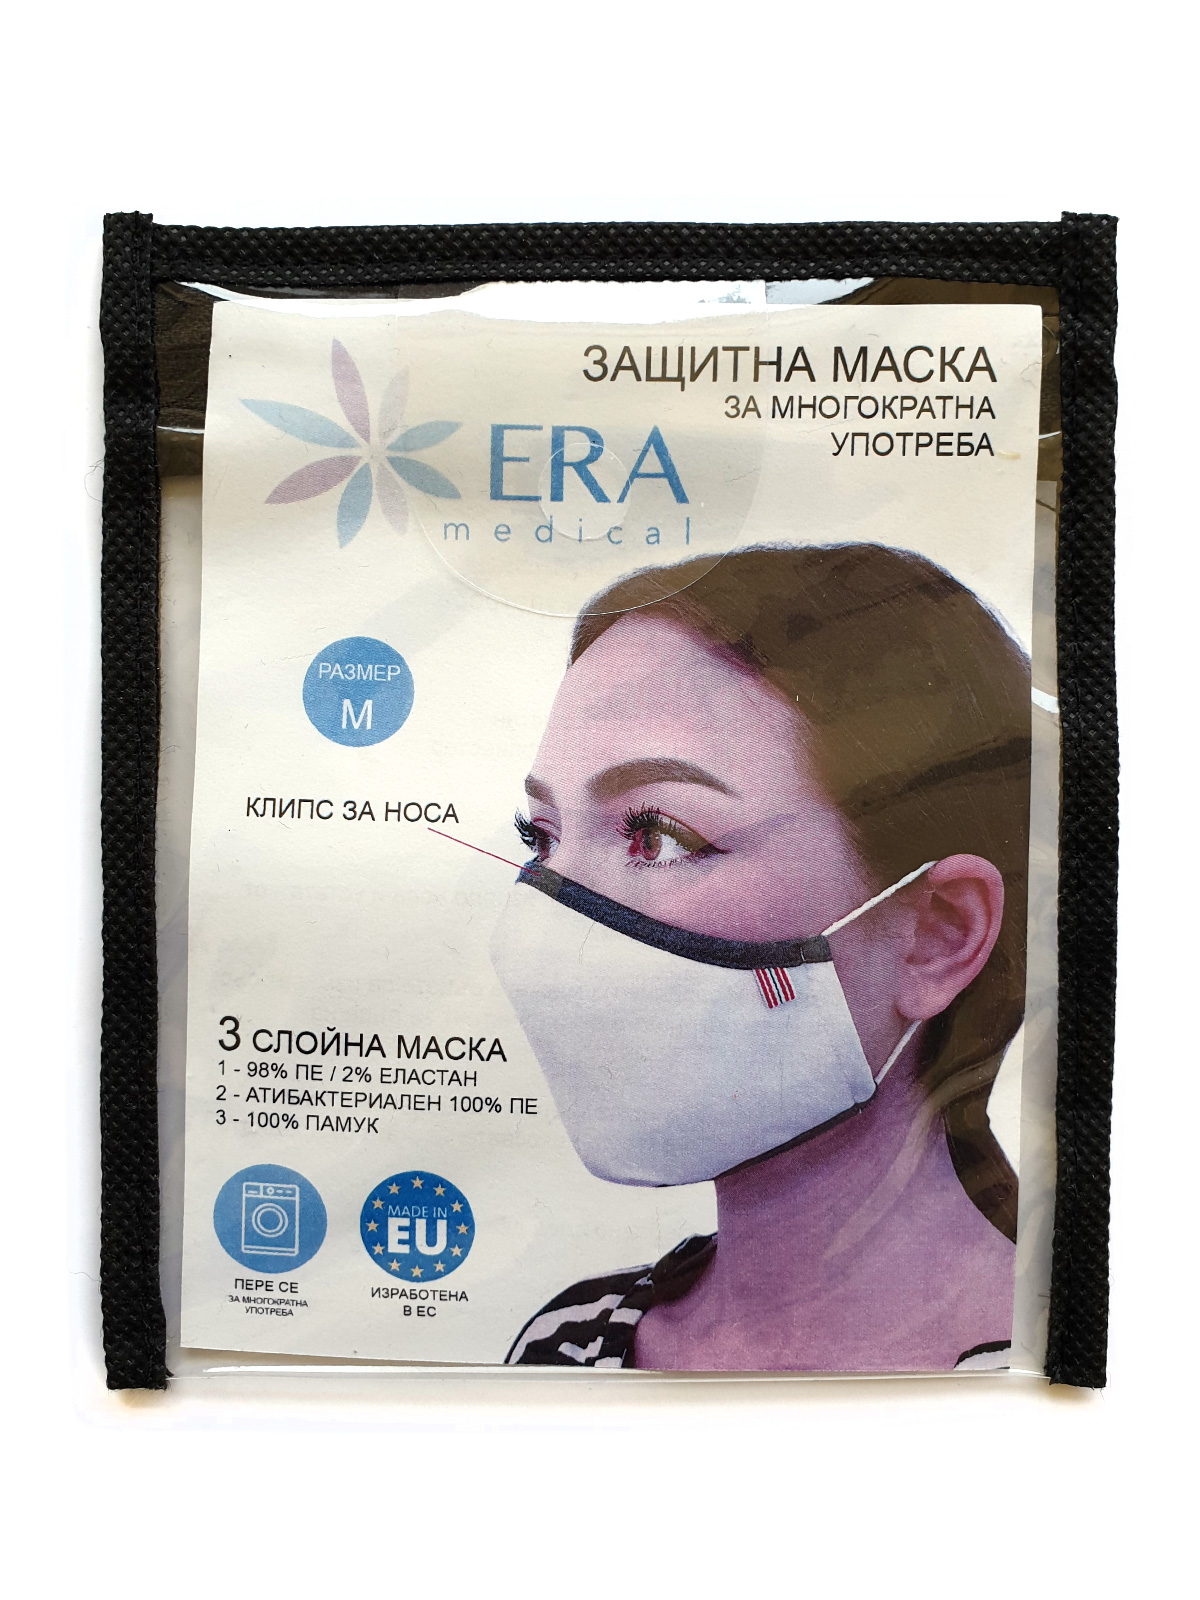  reusable mask white  - 10681 - € 2.76 img4